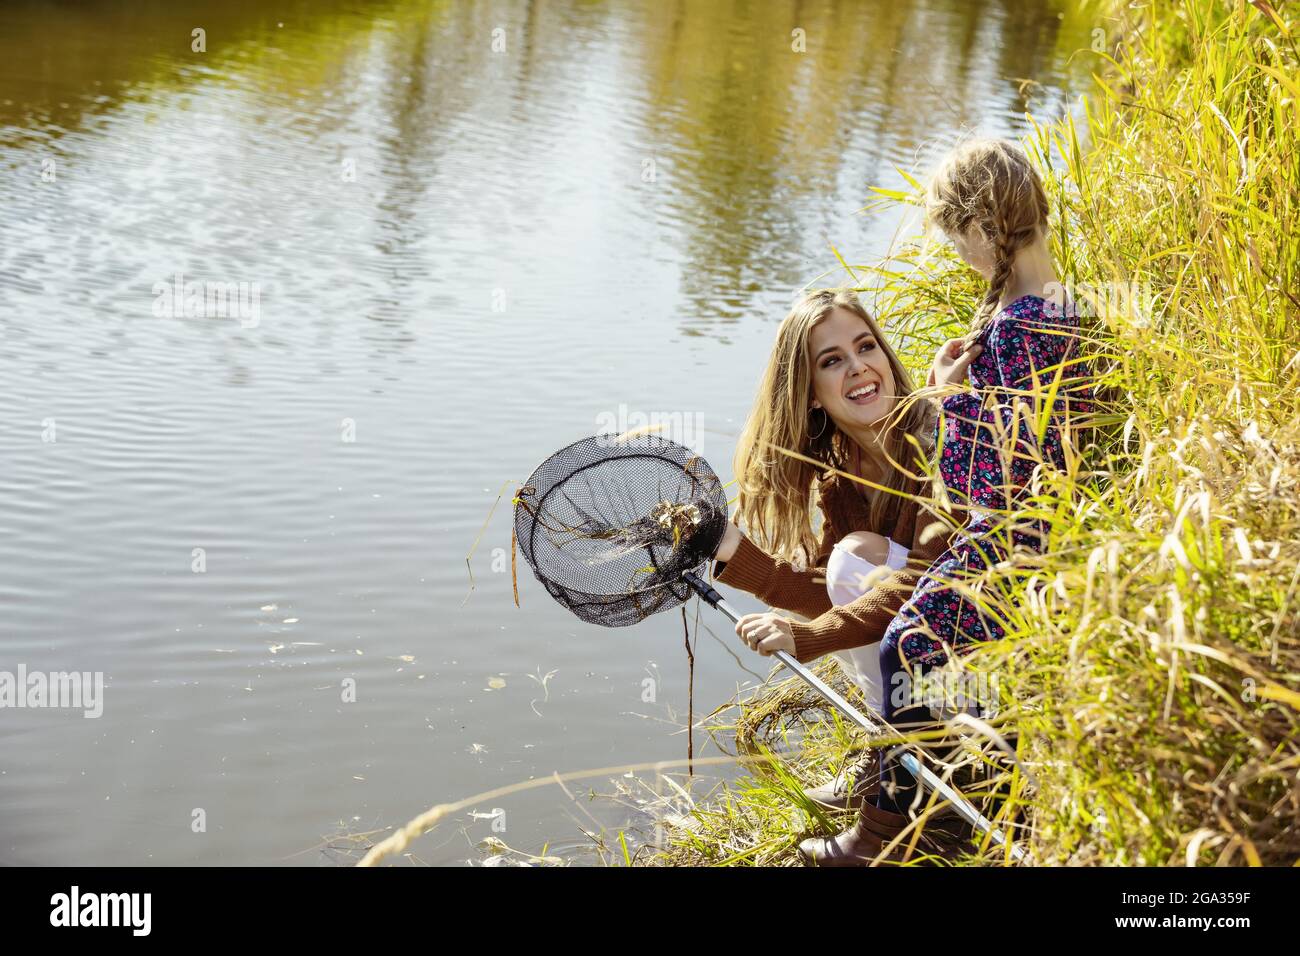 Una madre pasa tiempo de calidad al aire libre con su hija y utiliza una red para atrapar insectos en un arroyo en un parque de la ciudad; Edmonton, Alberta, Canadá Foto de stock